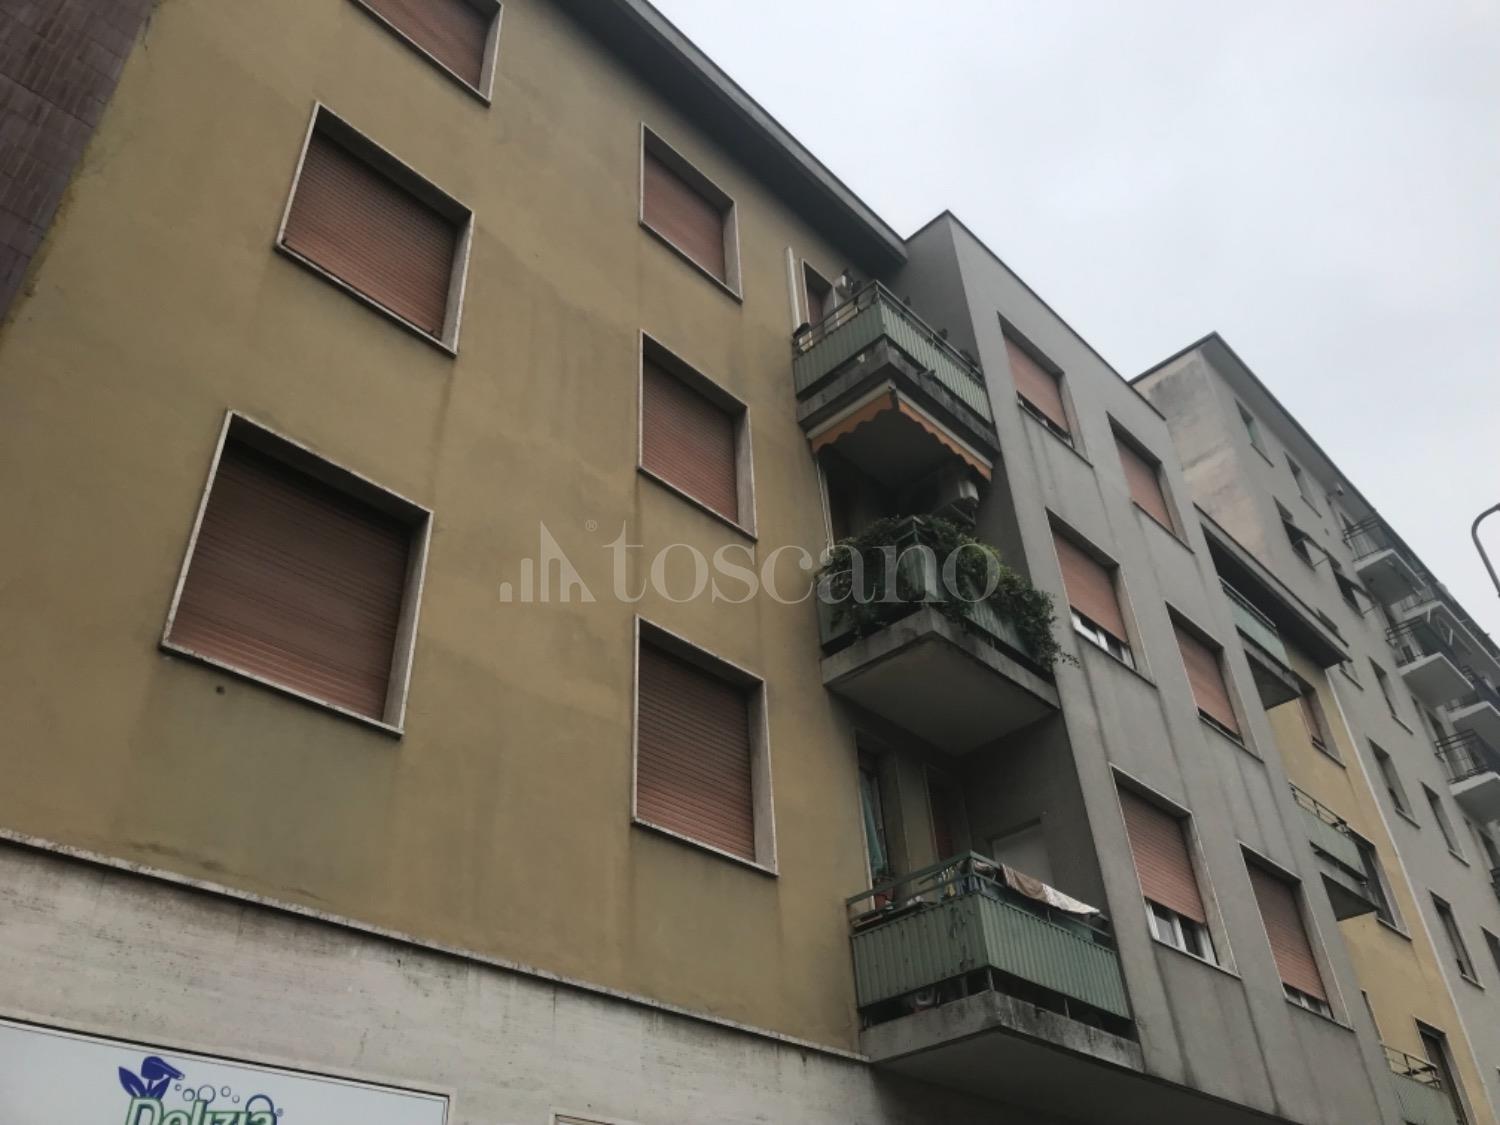 Vendita Negozio A Milano In Via Inganni Giambellino 87 2019 Toscano